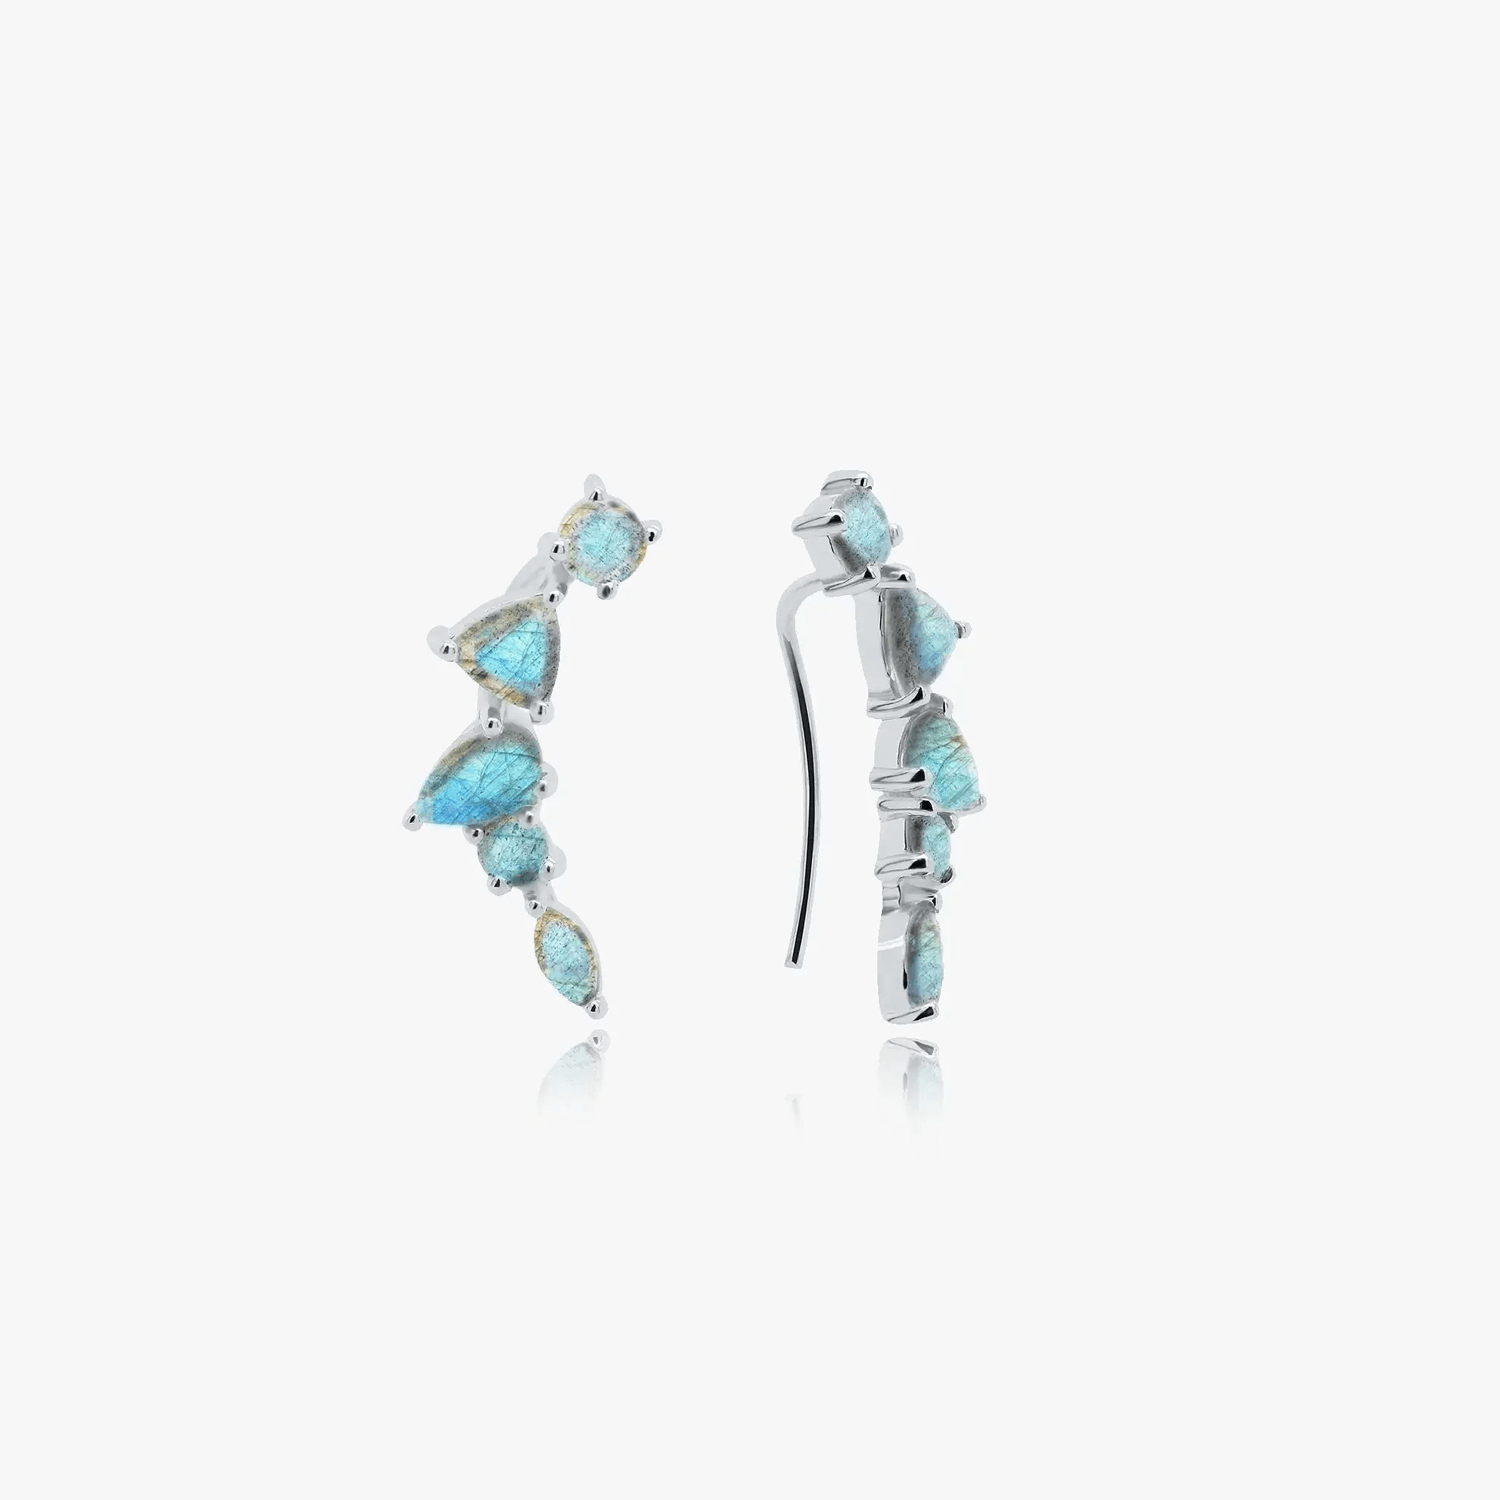 Valery silver earrings – Labradorite